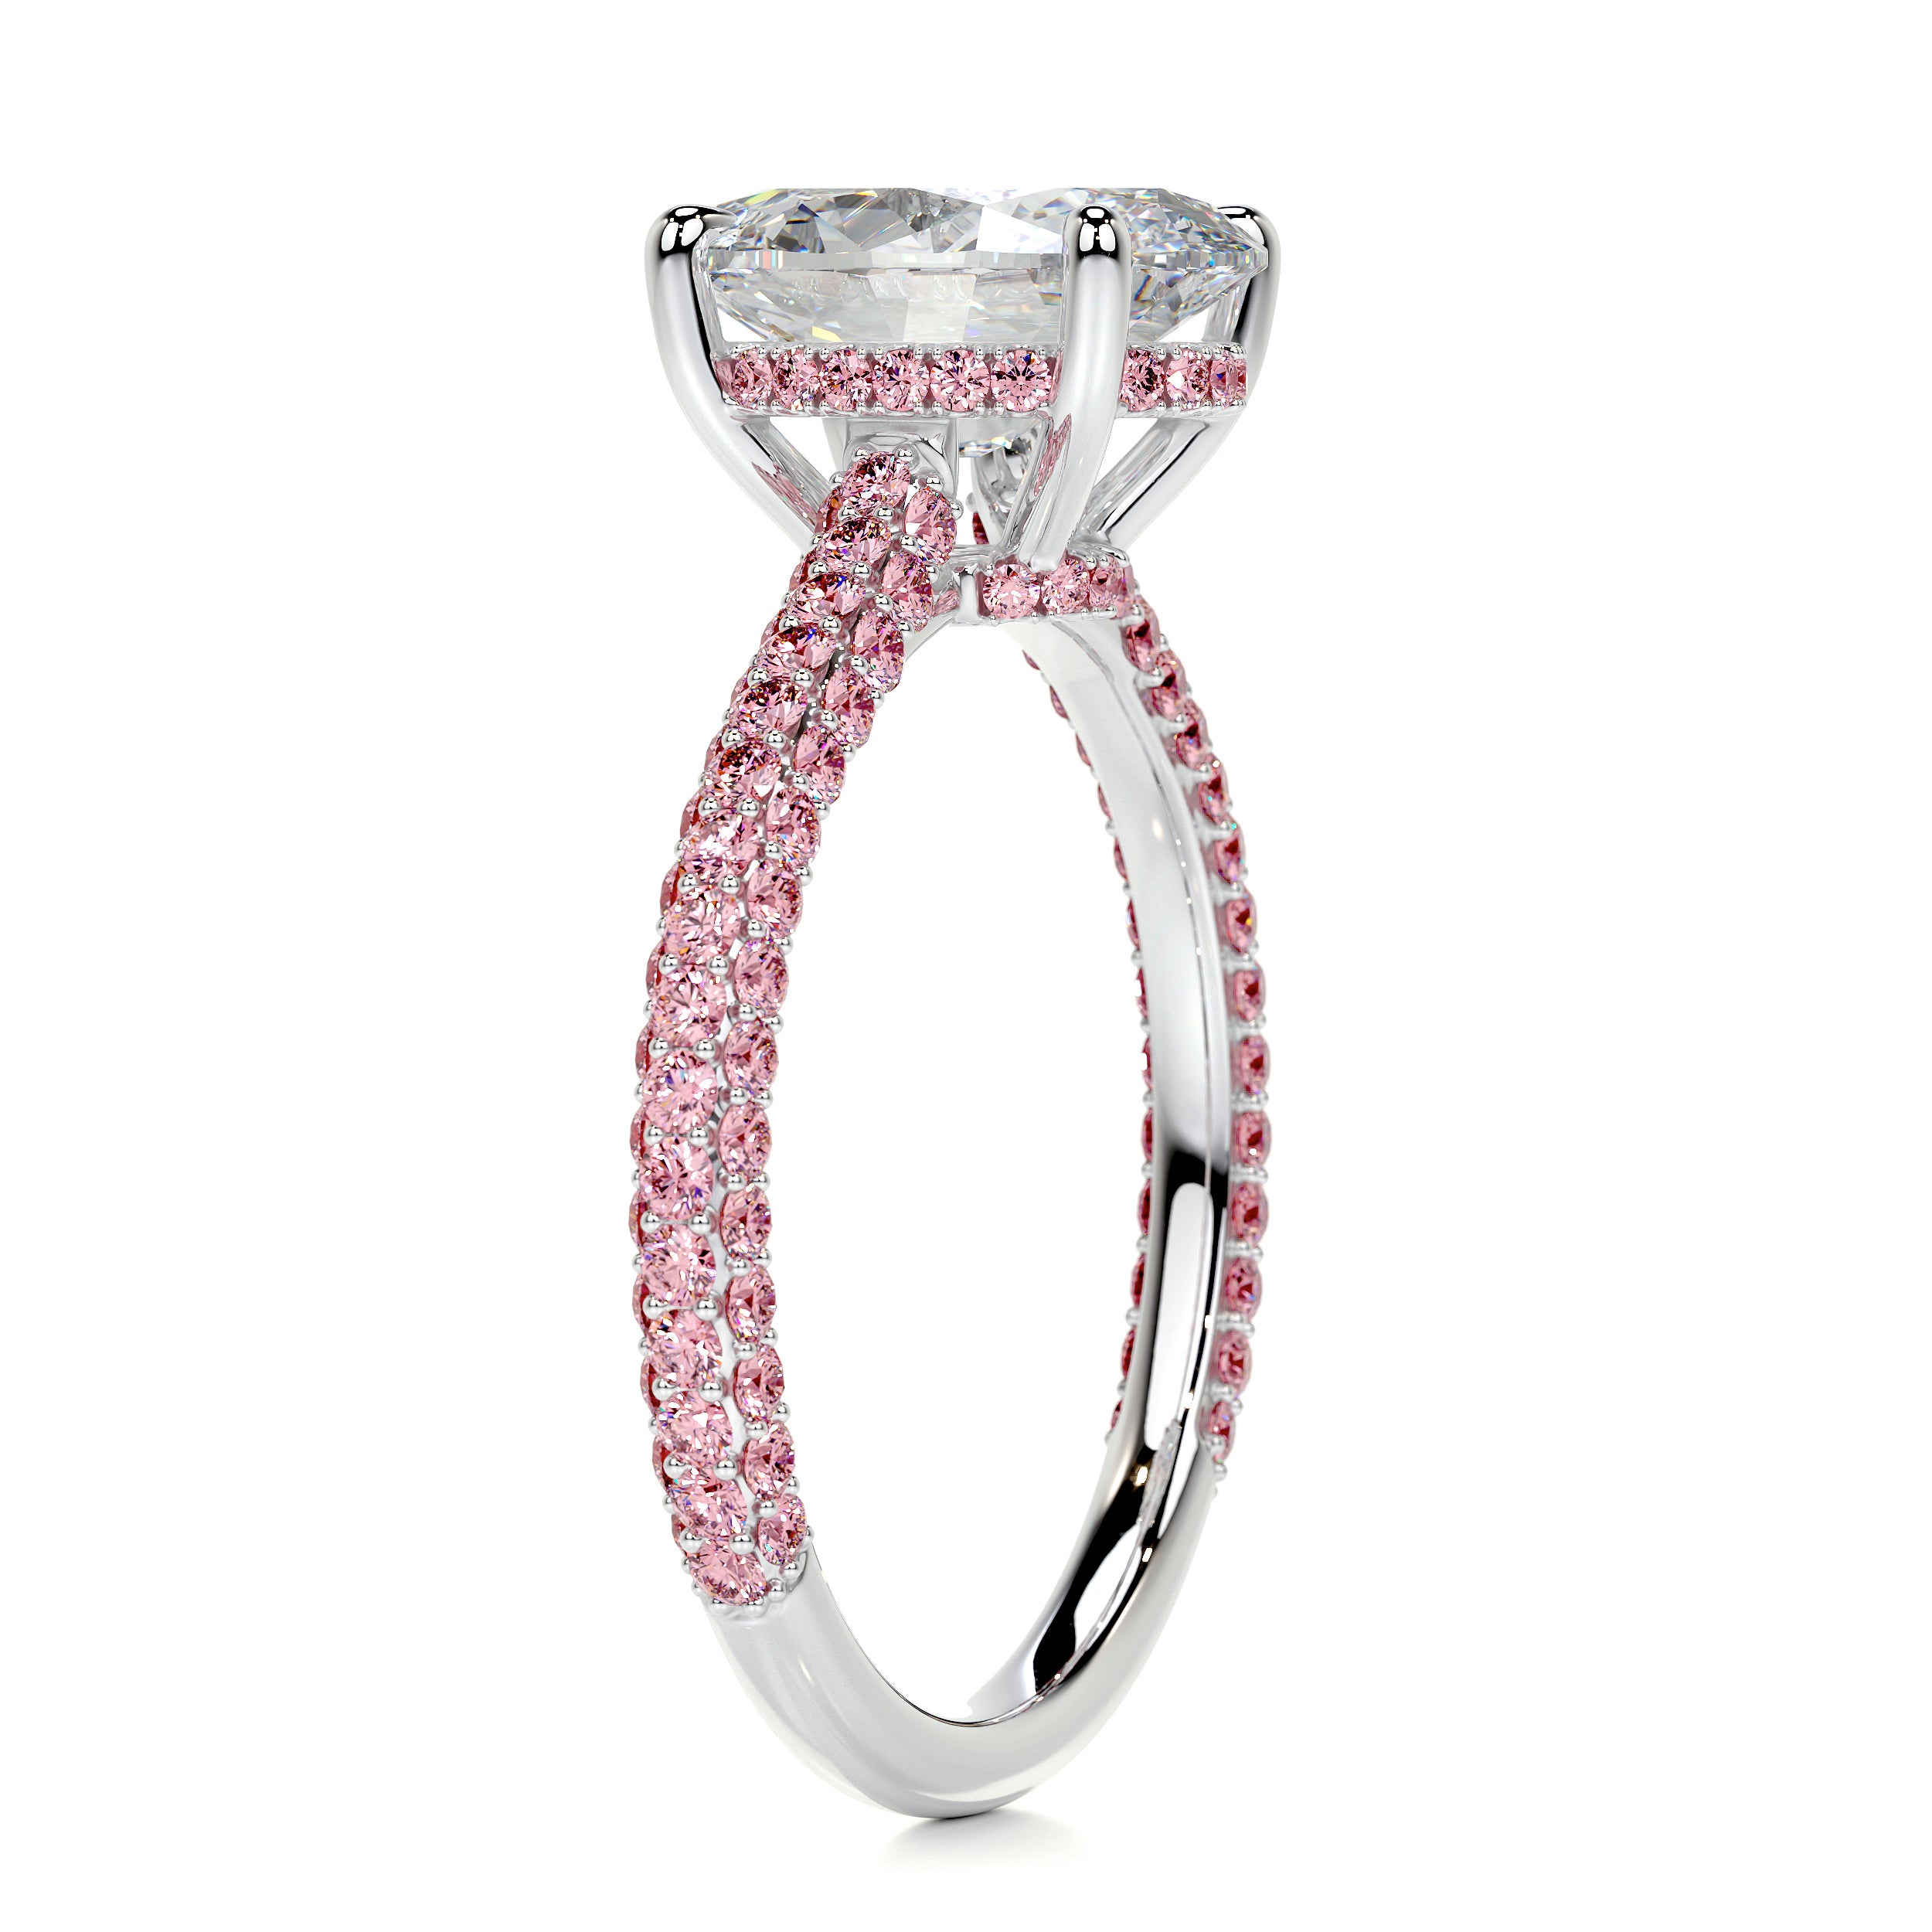 Rebecca Moissanite & Gemstones Ring   (3.5 Carat) -14K White Gold